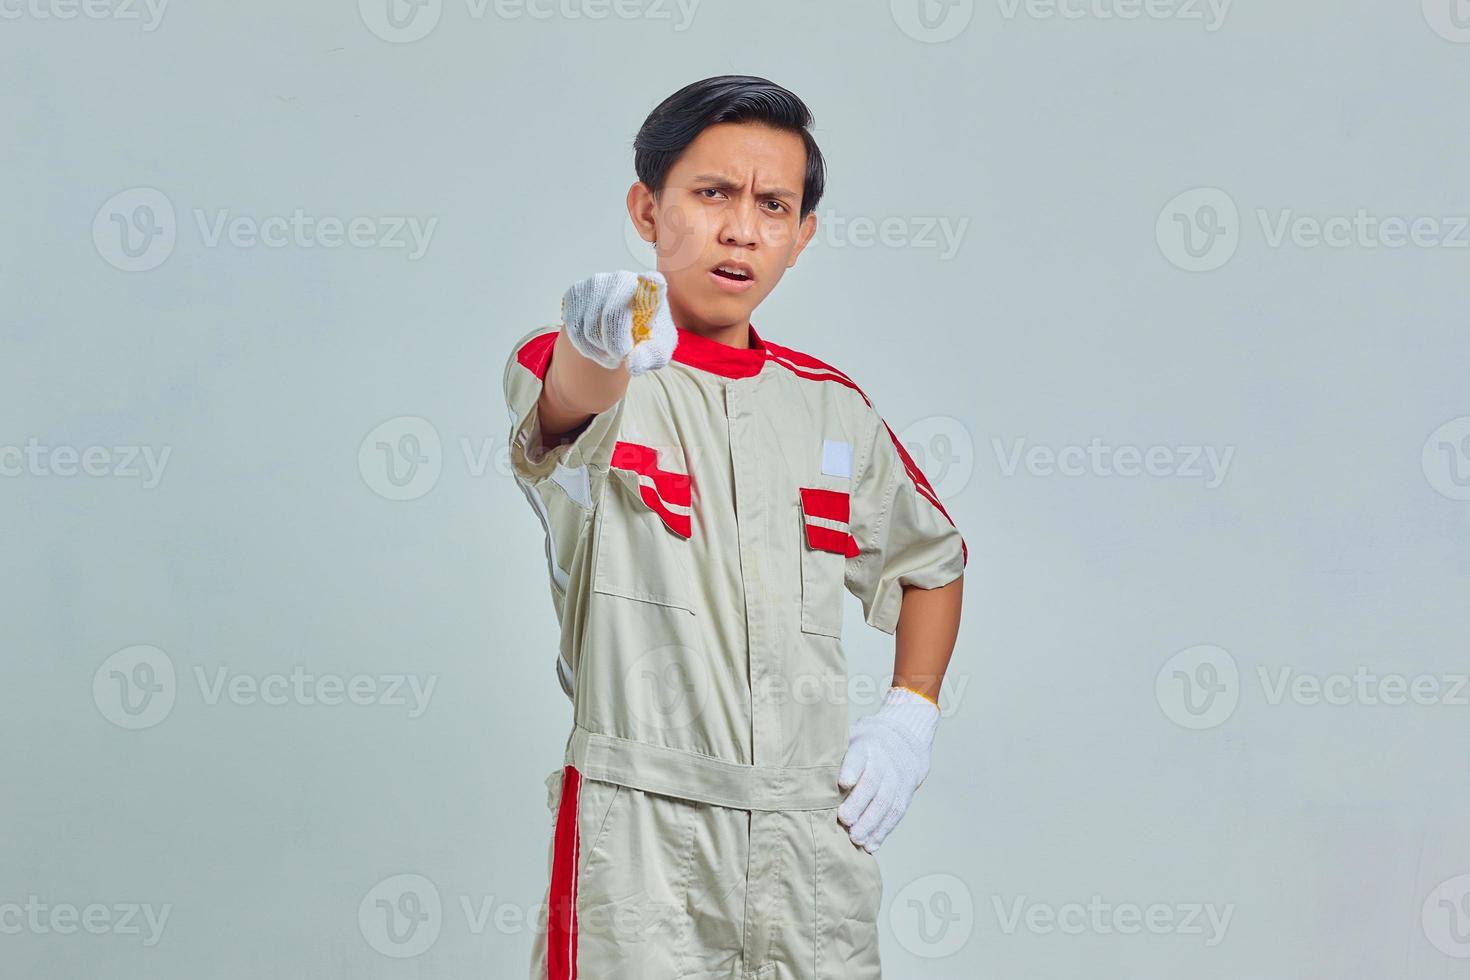 retrato de homem bonito surpreso usando uniforme mecânico apontando com o dedo e a boca abertos em fundo cinza foto